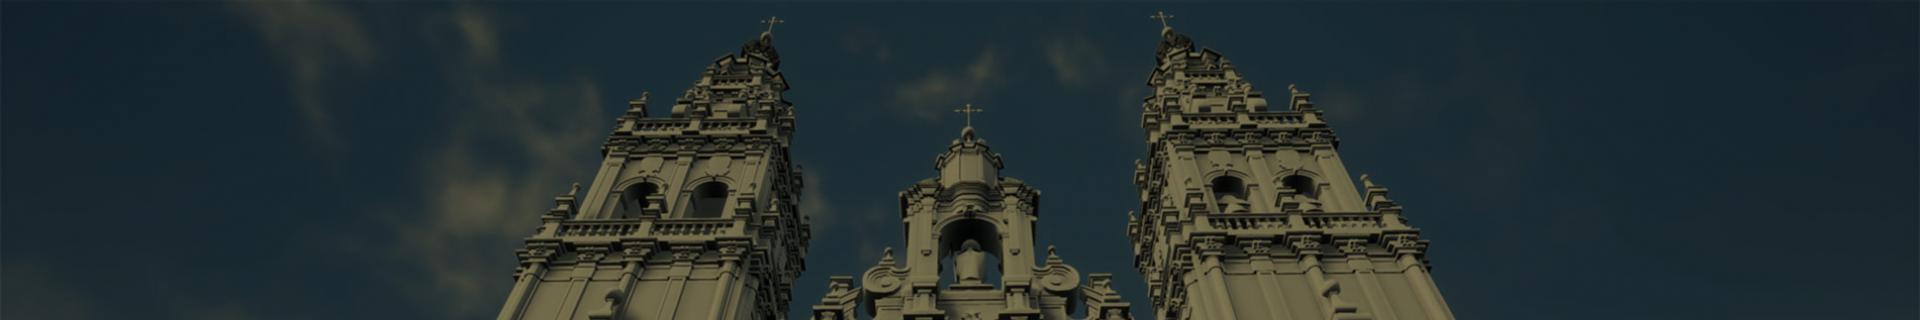 Fundación Catedral de Santiago